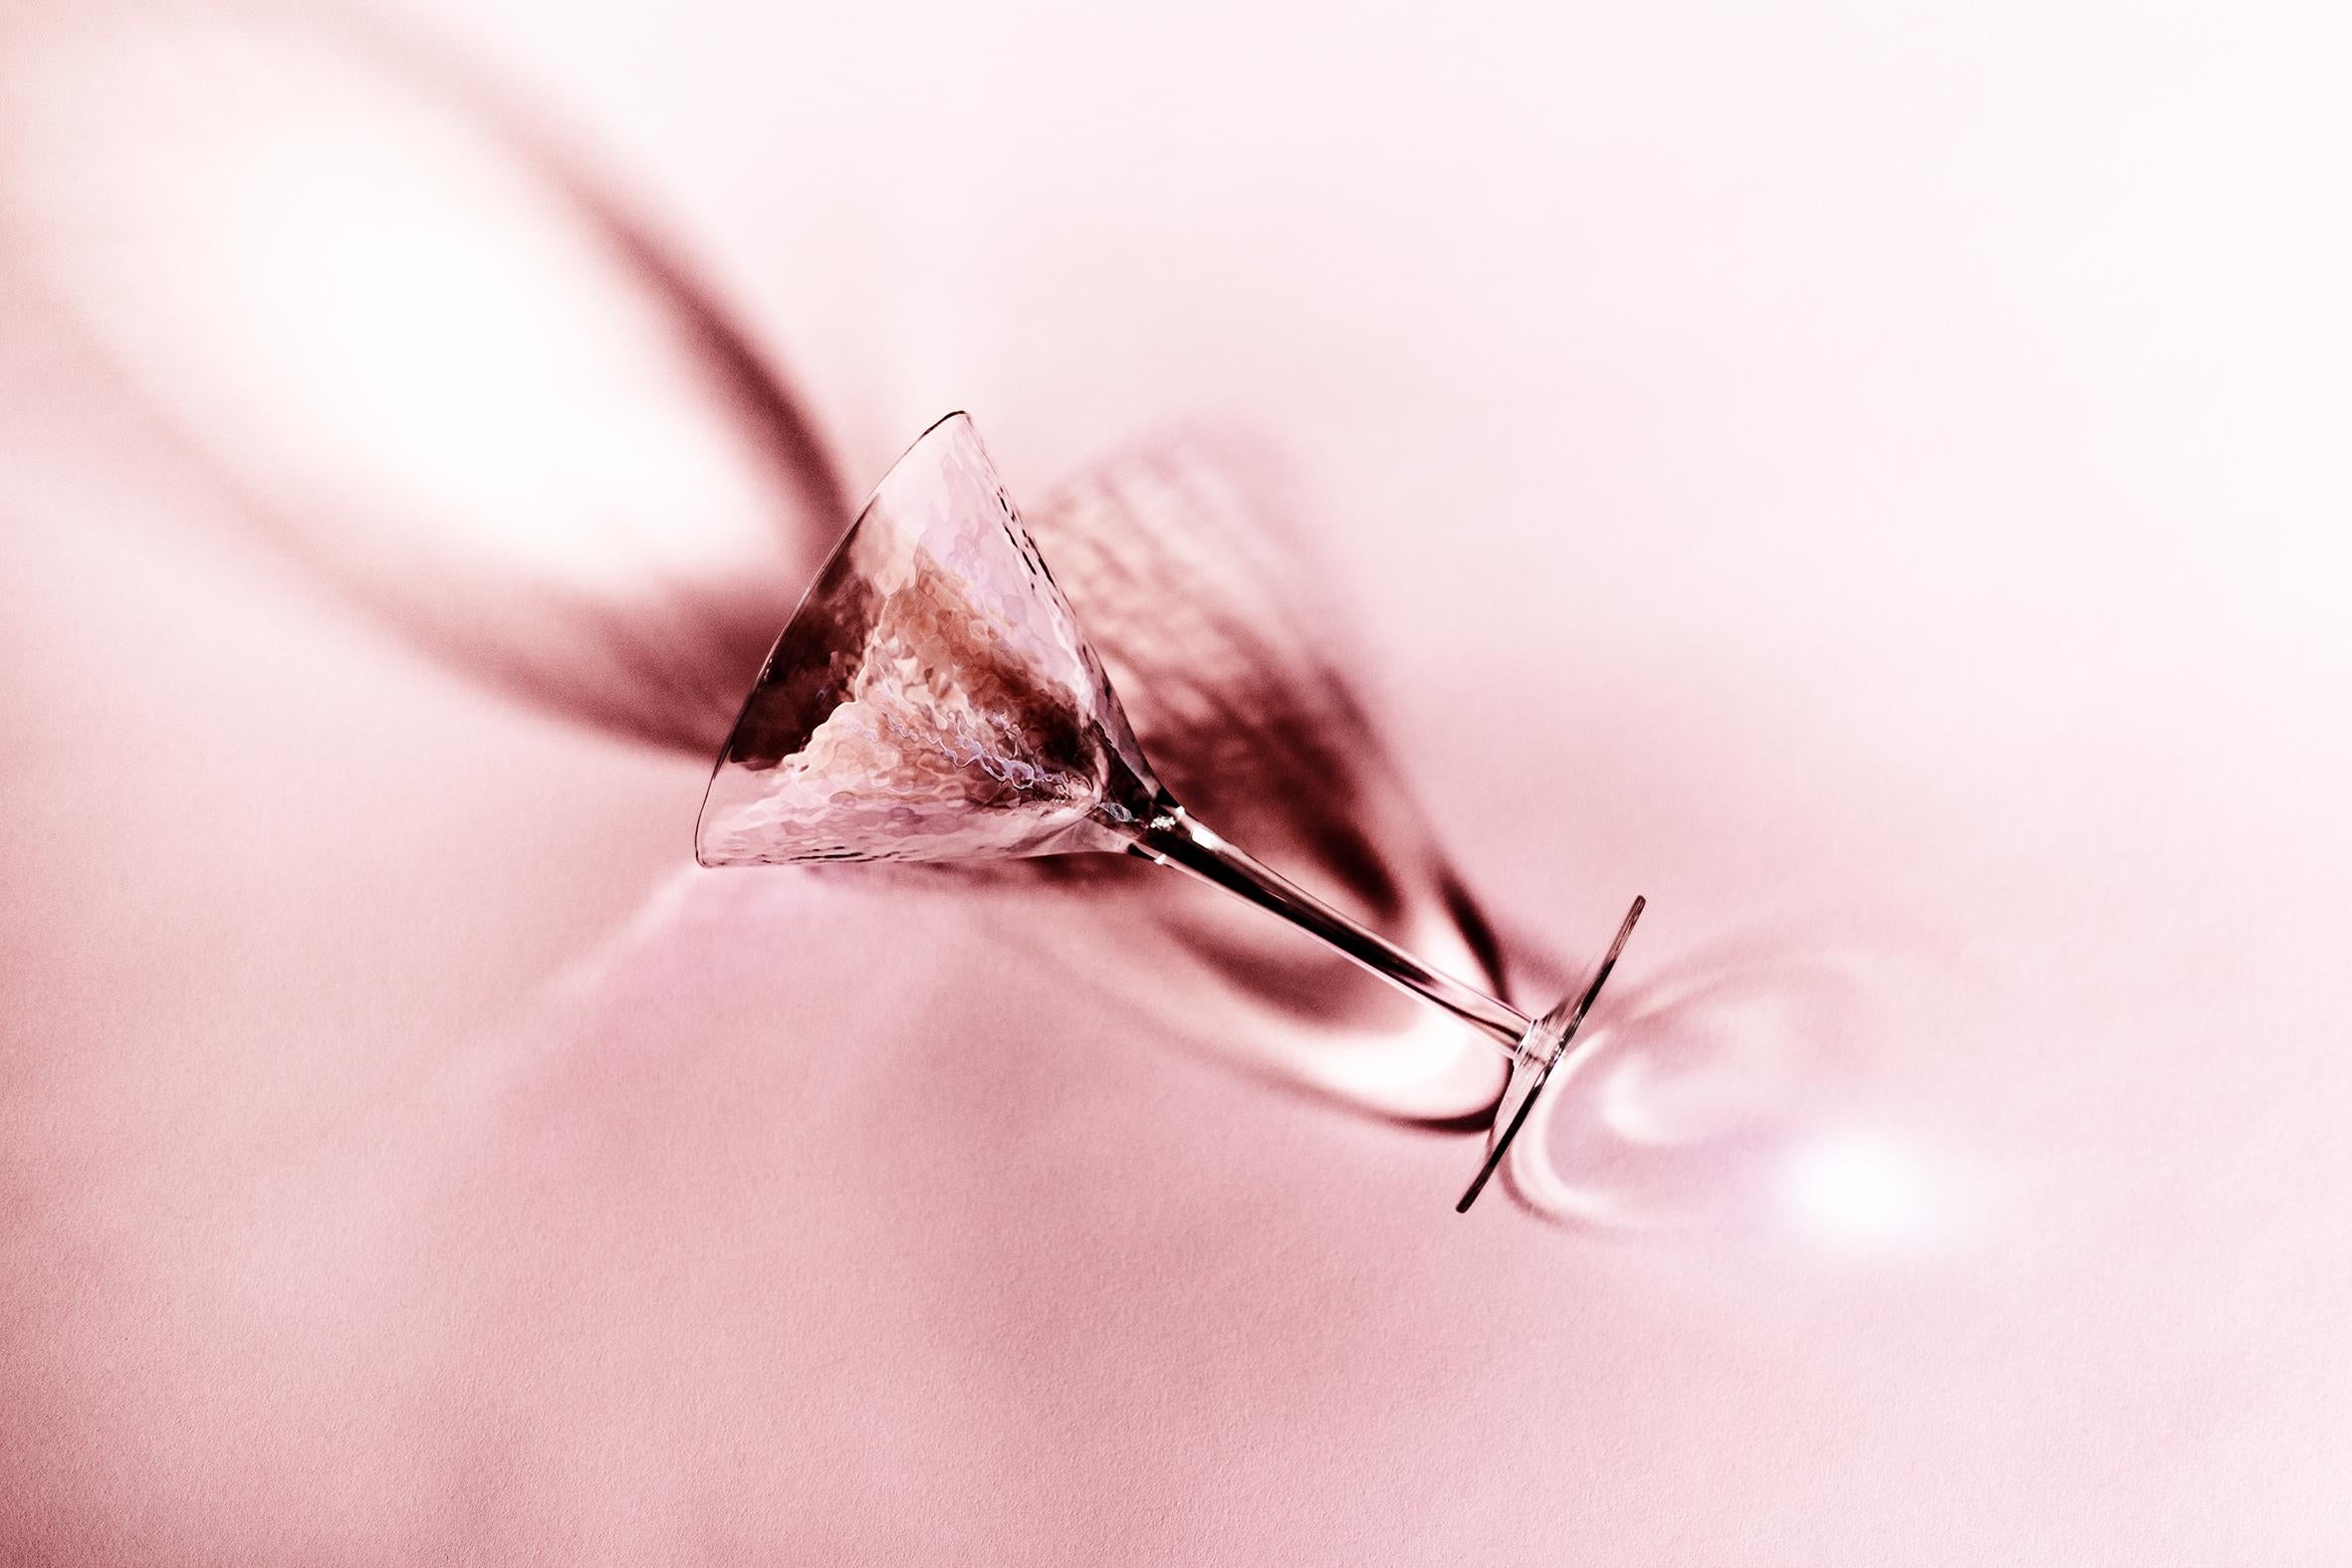 Glas, Stillleben-Fotografie aus rosa Glas, limitierte Auflage von 20 Stück